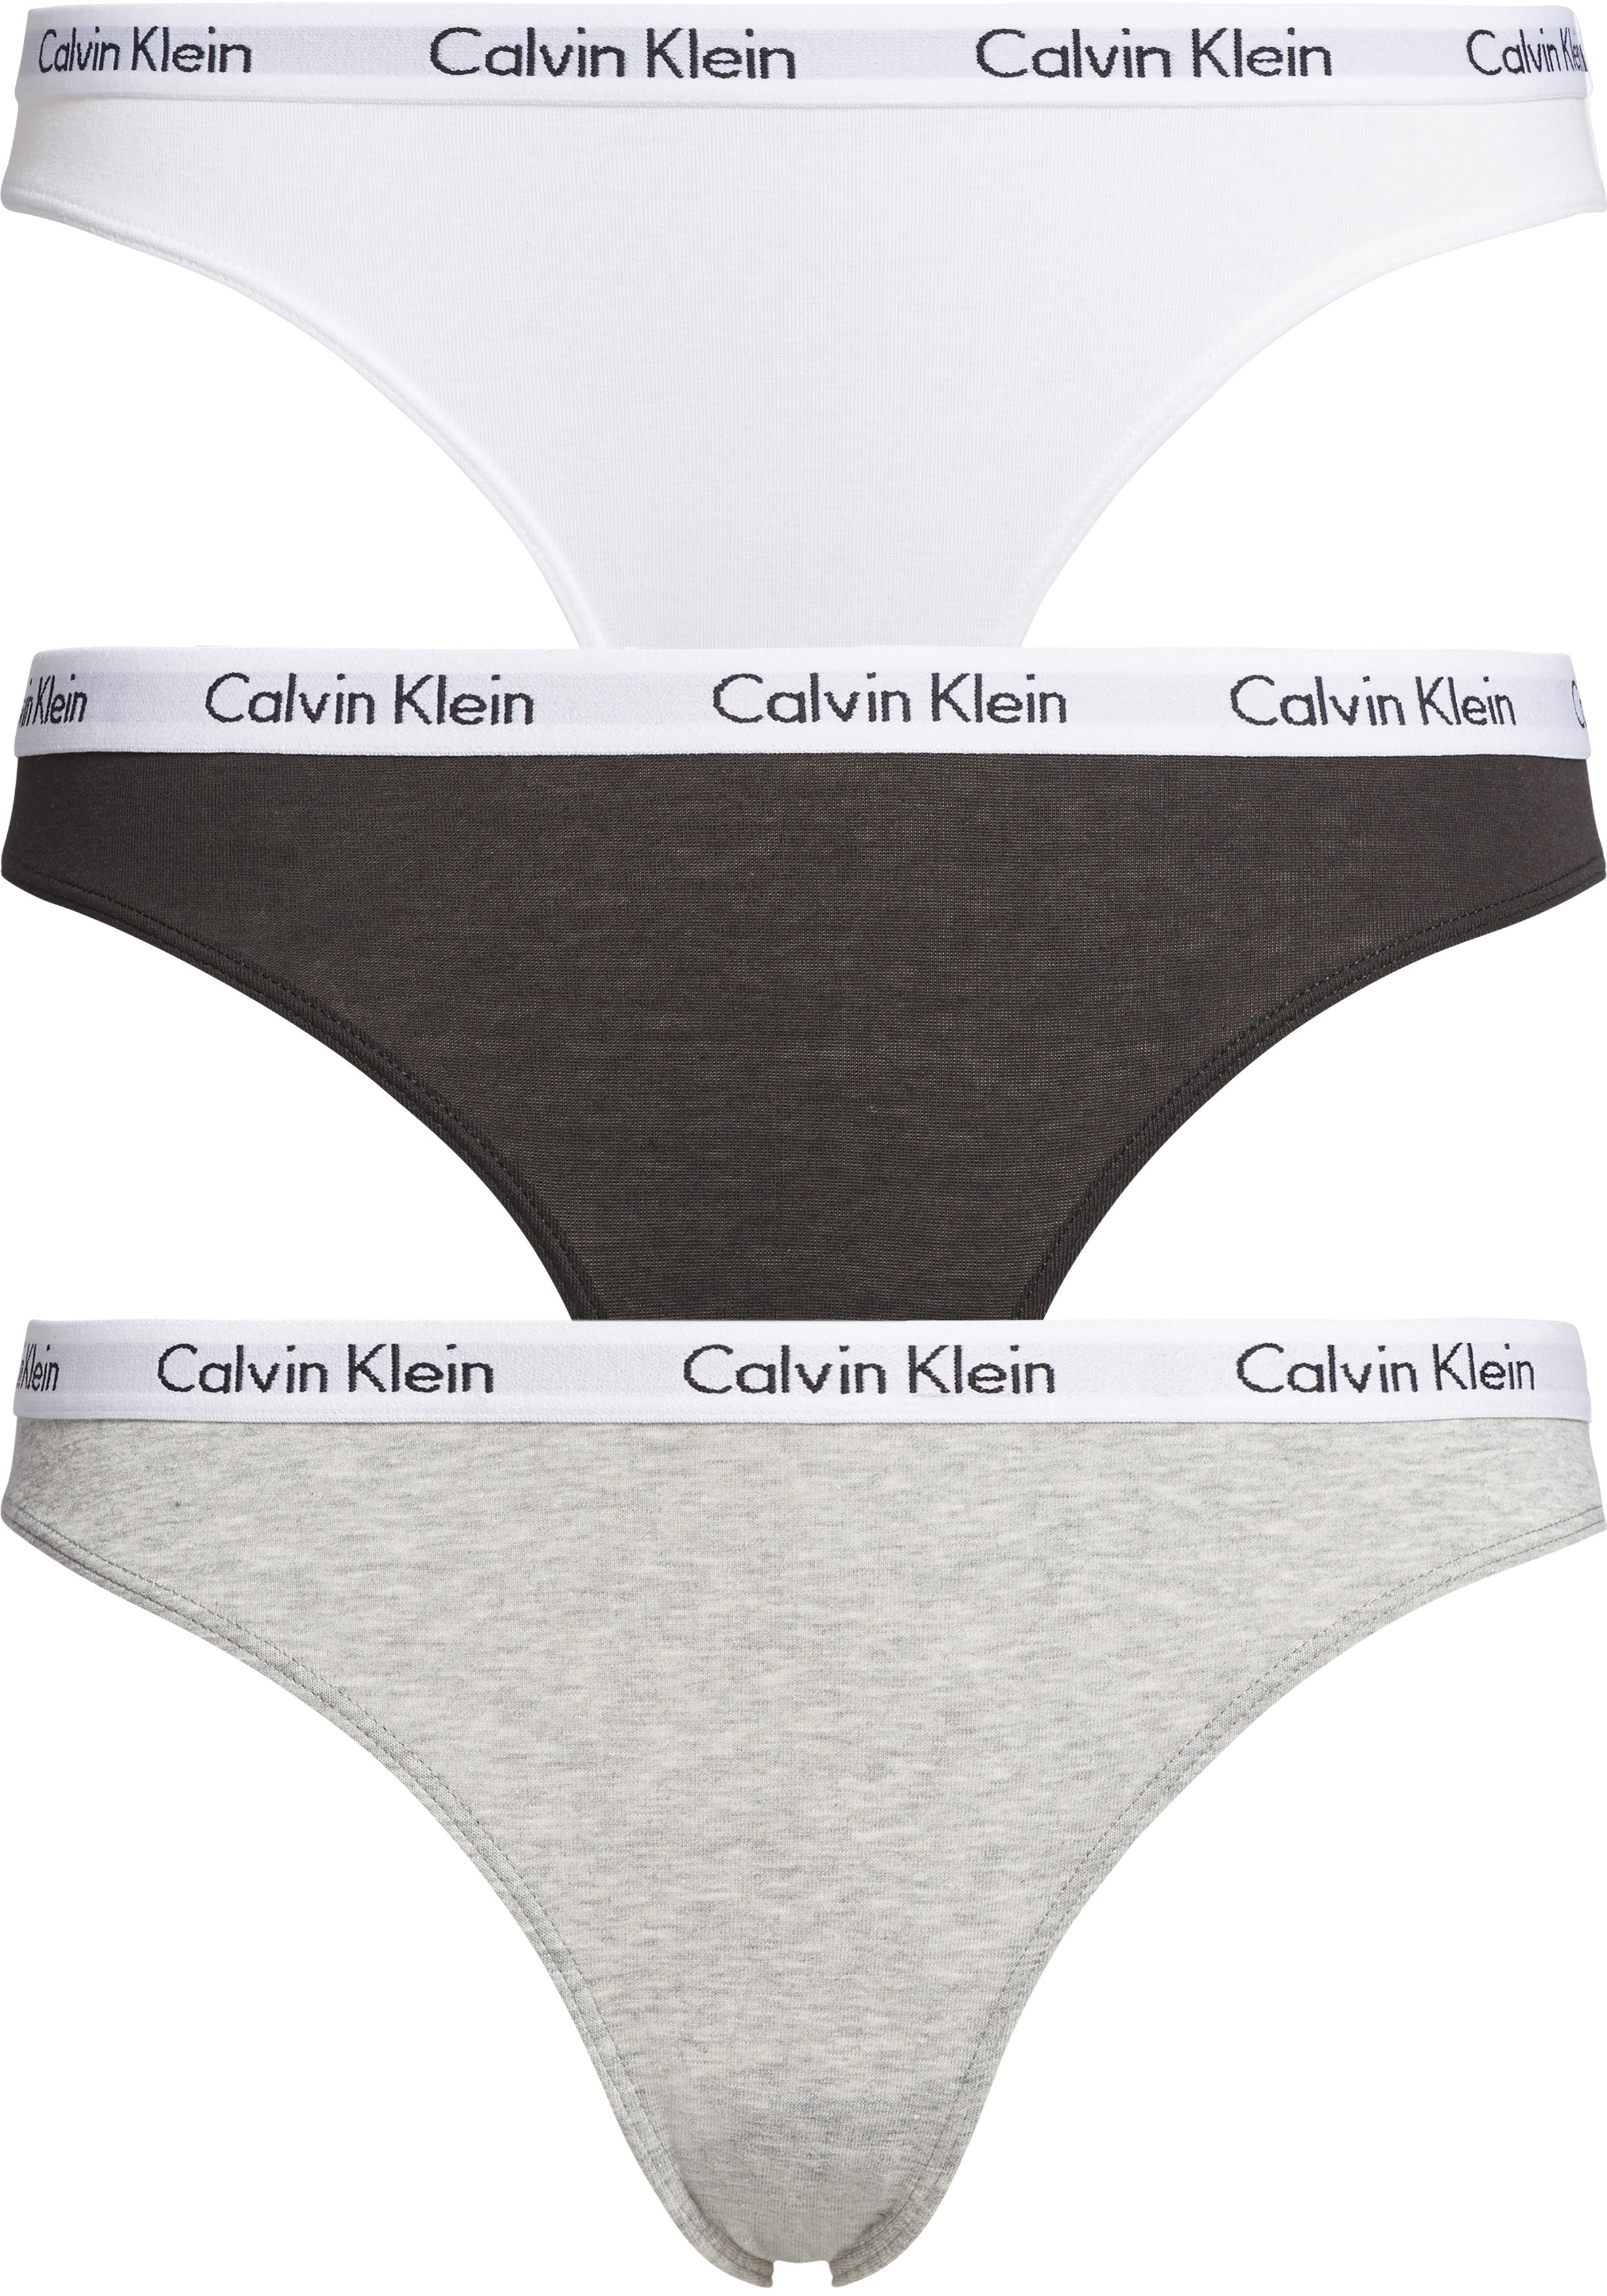 kristal Aanvankelijk Zwaaien Calvin Klein dames slips (3-pack), zwart, wit en grijs - Shop de nieuwste  voorjaarsmode